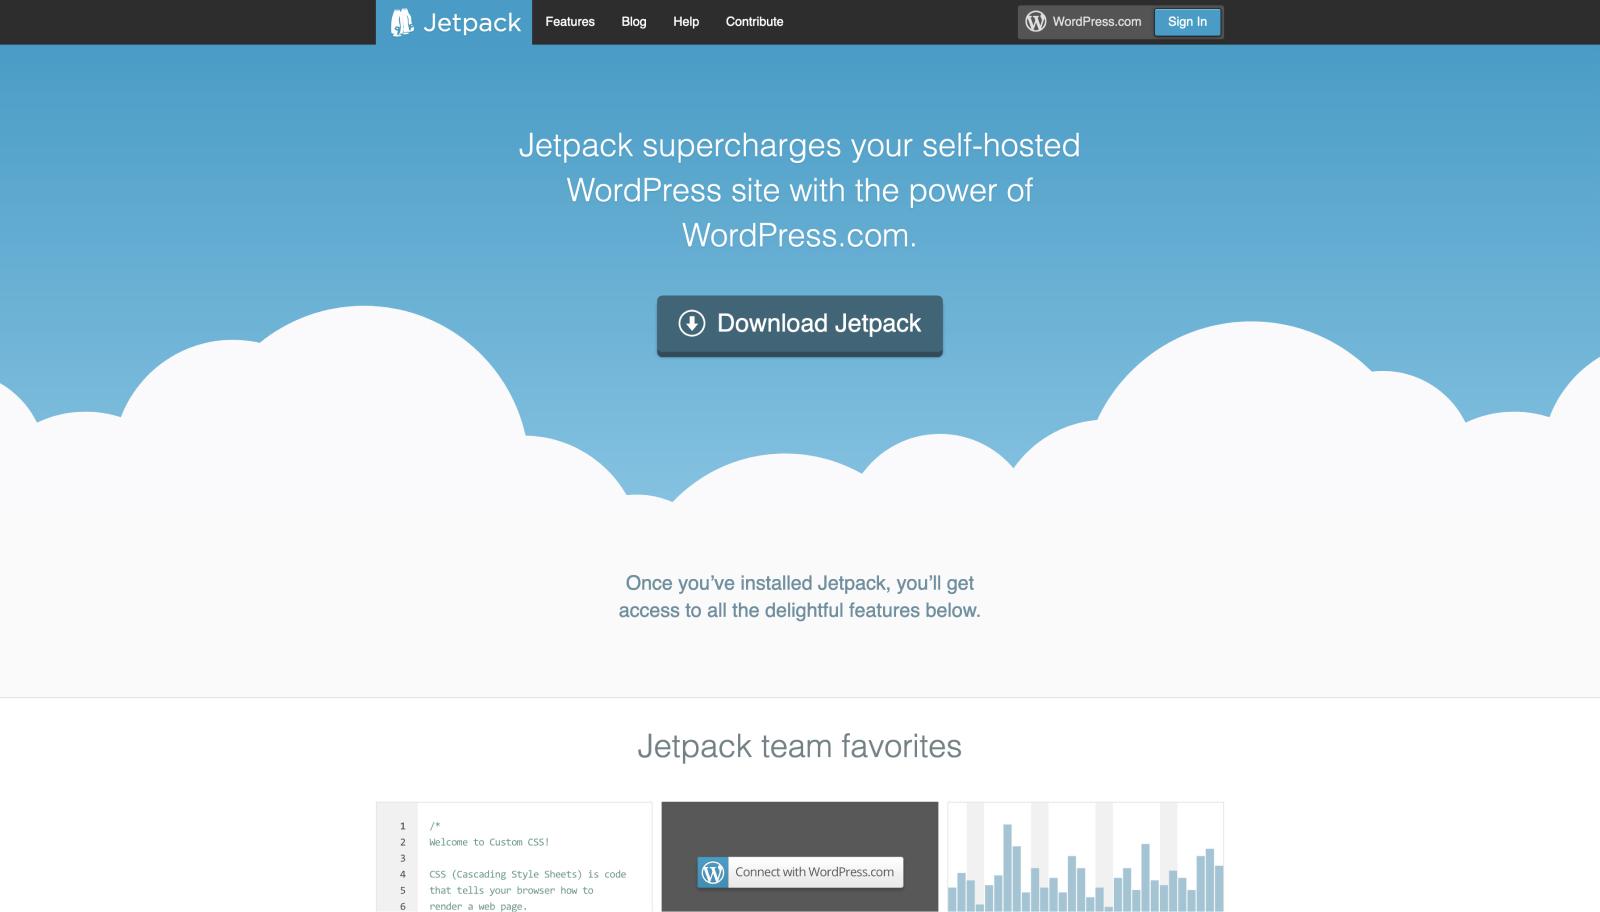 The Jetpack website in 2013